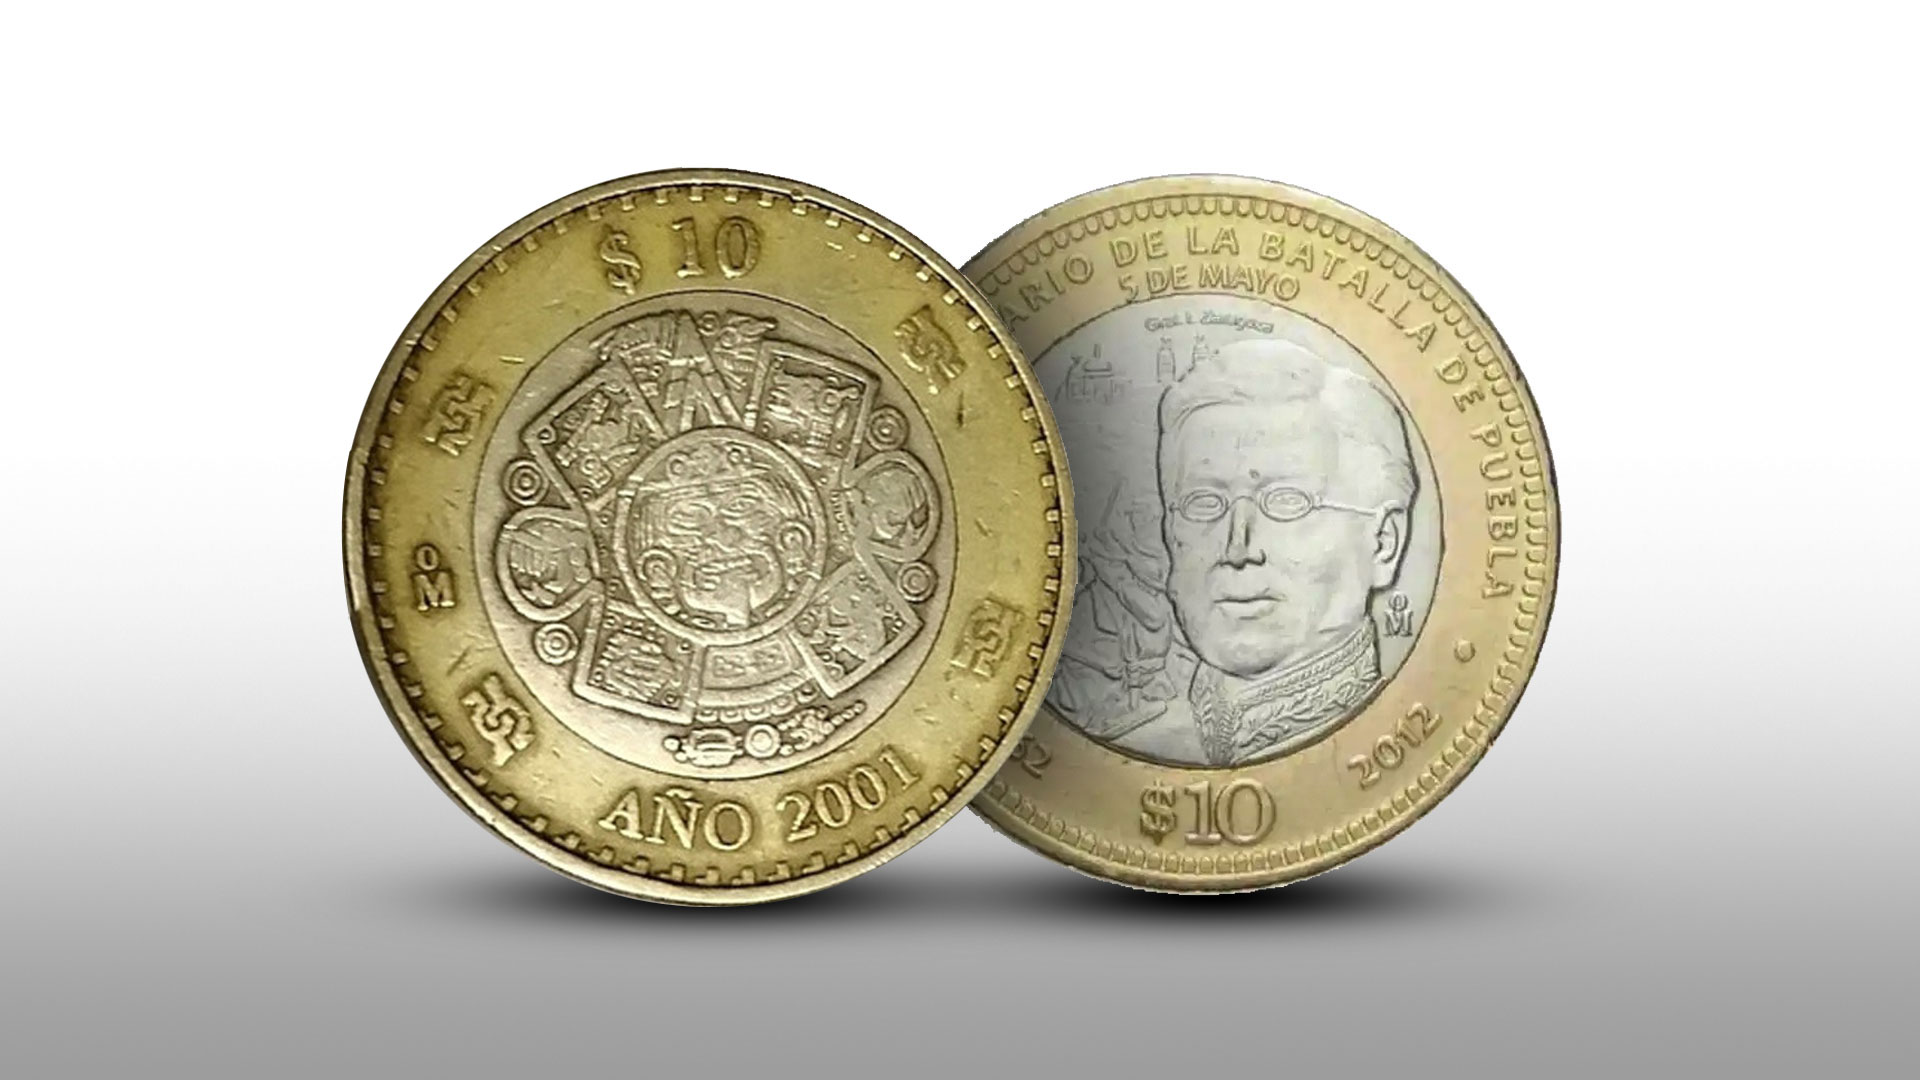 Monedas de 10 pesos. (Infobae)